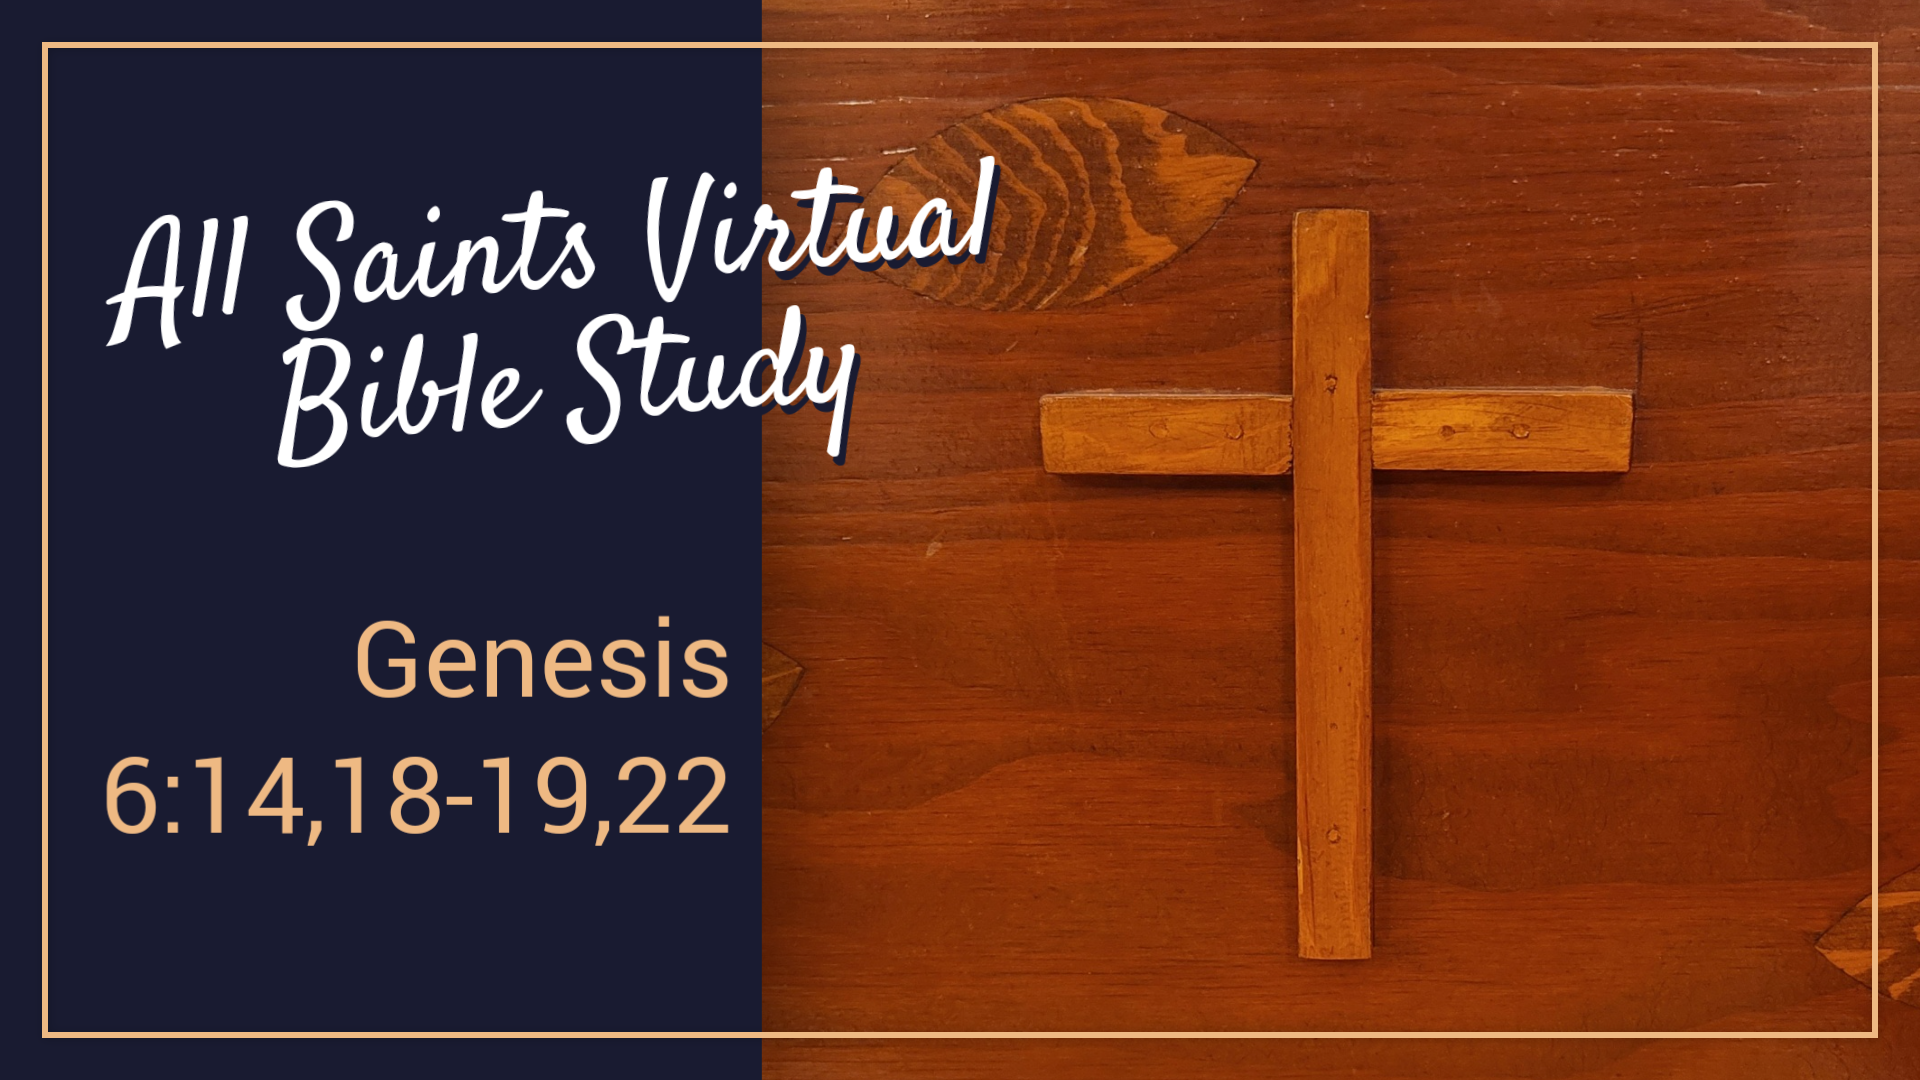 All Saints Virtual Bible Study - Genesis 6:14,18-19,22